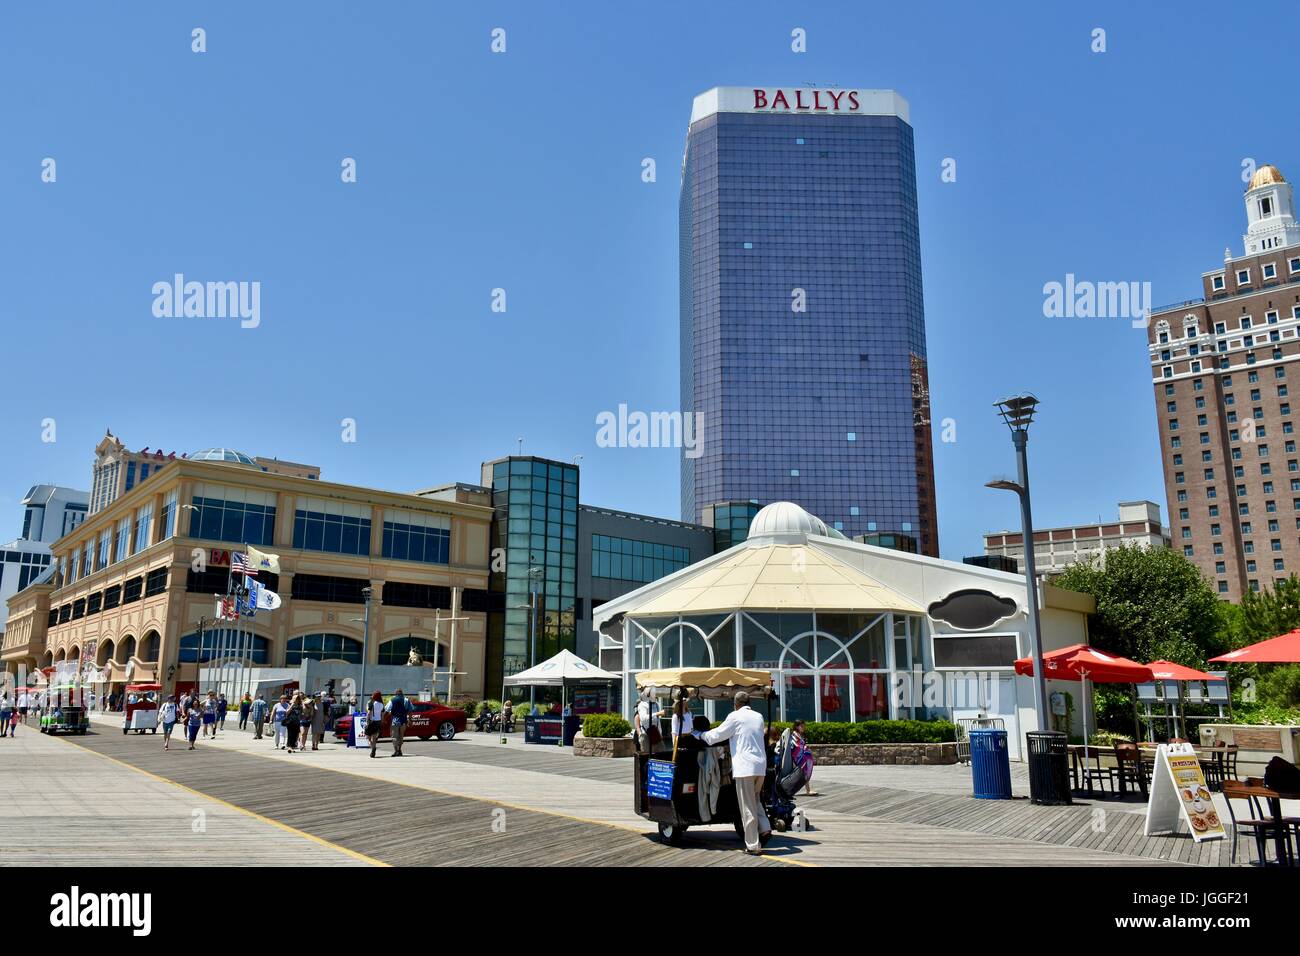 Bally's hotel and casino Atlantic City, New Jersey Stock Photo